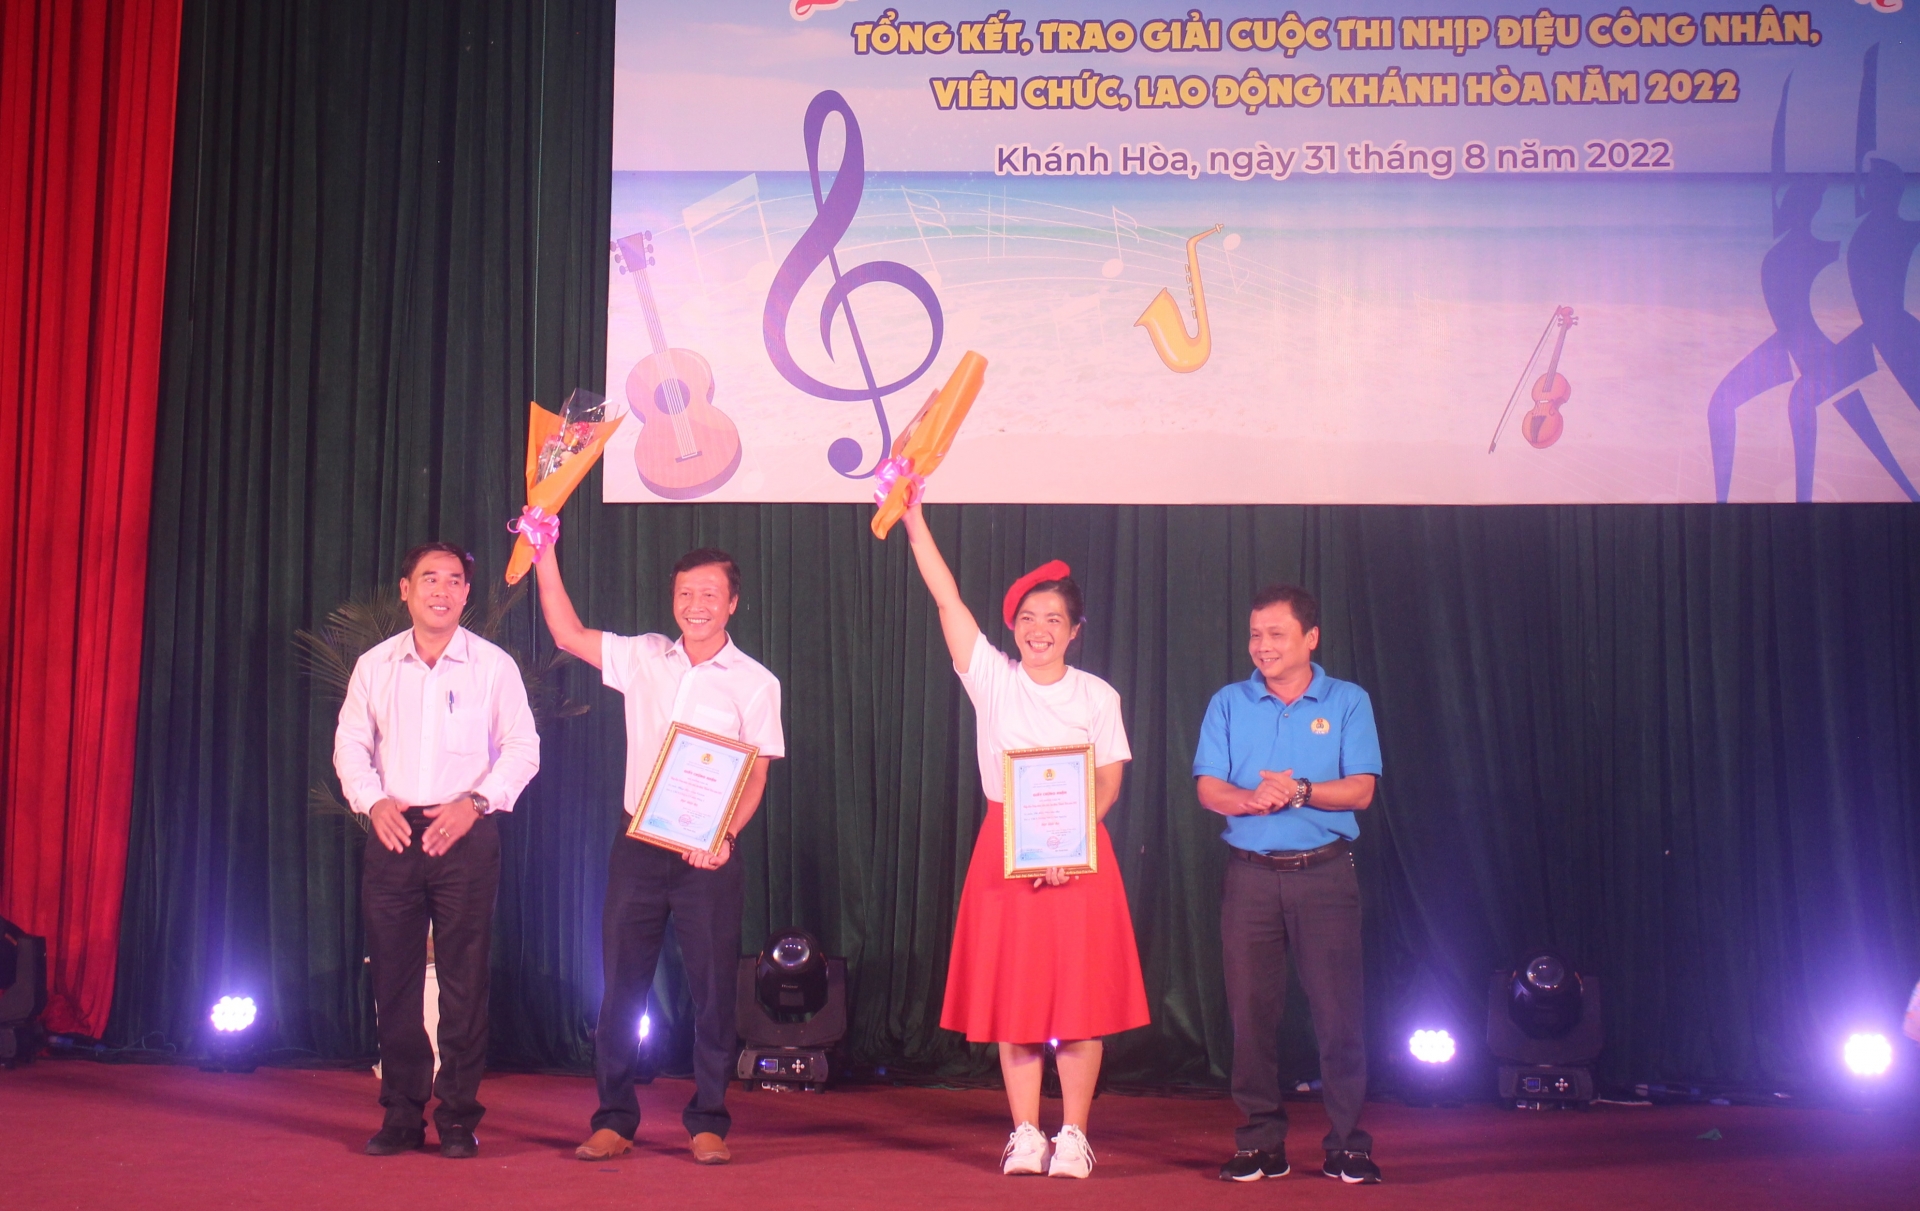 233 video clip tham gia Cuộc thi “Nhịp điệu CNVCLĐ Khánh Hòa năm 2022